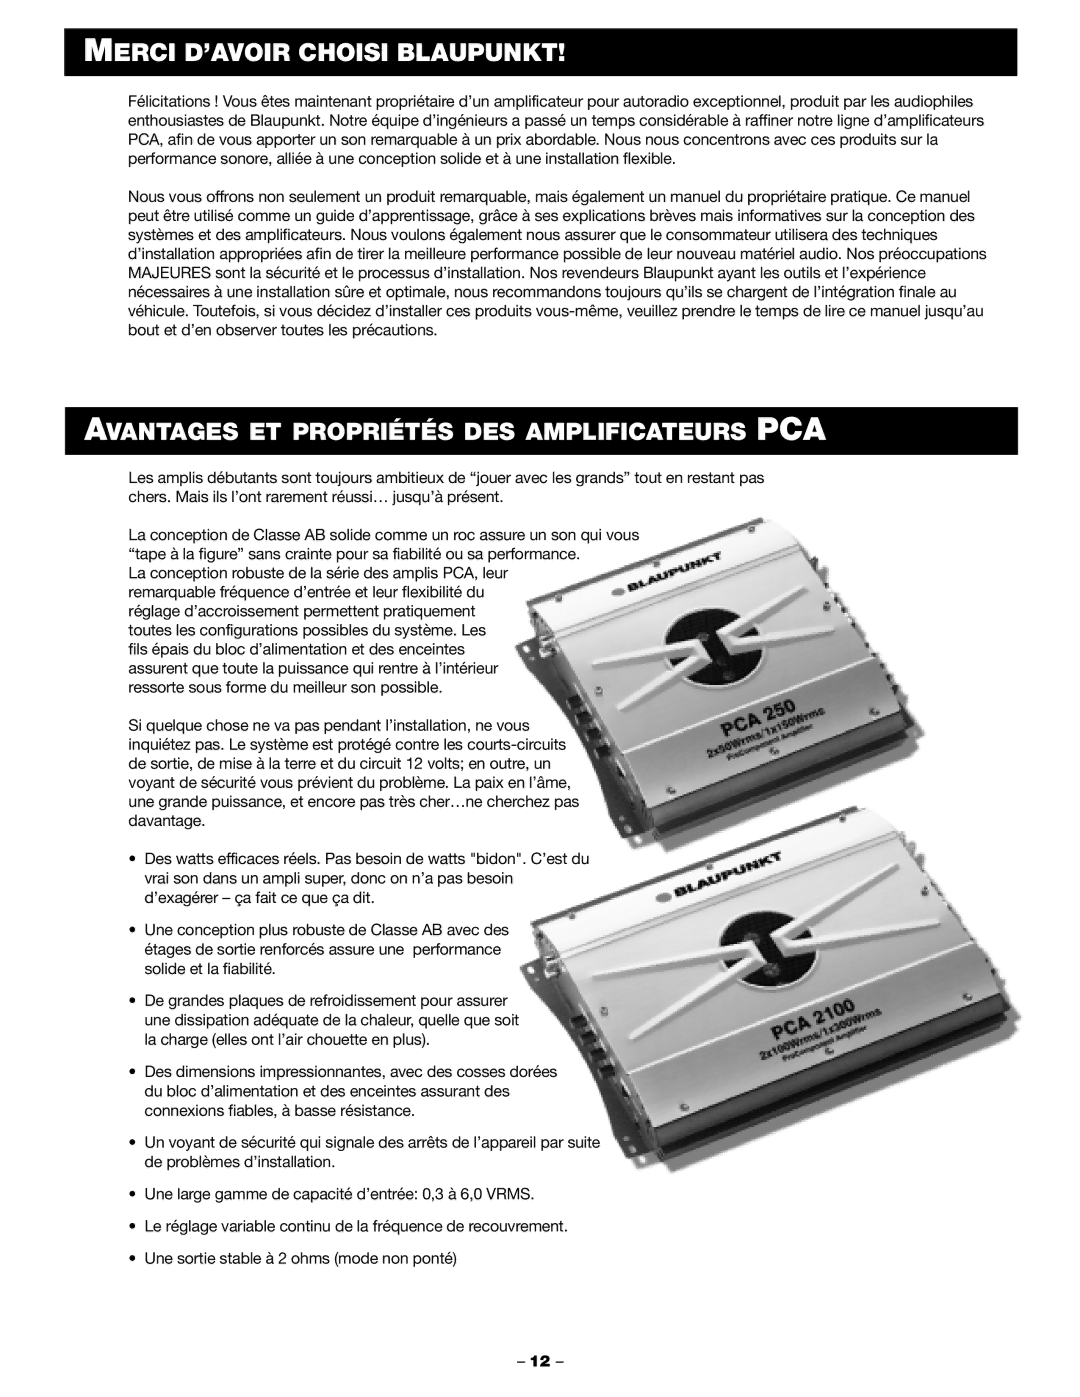 Blaupunkt PCA 2100, PCA 250 manual Merci D’AVOIR Choisi Blaupunkt, Avantages ET Propriétés DES Amplificateurs PCA 